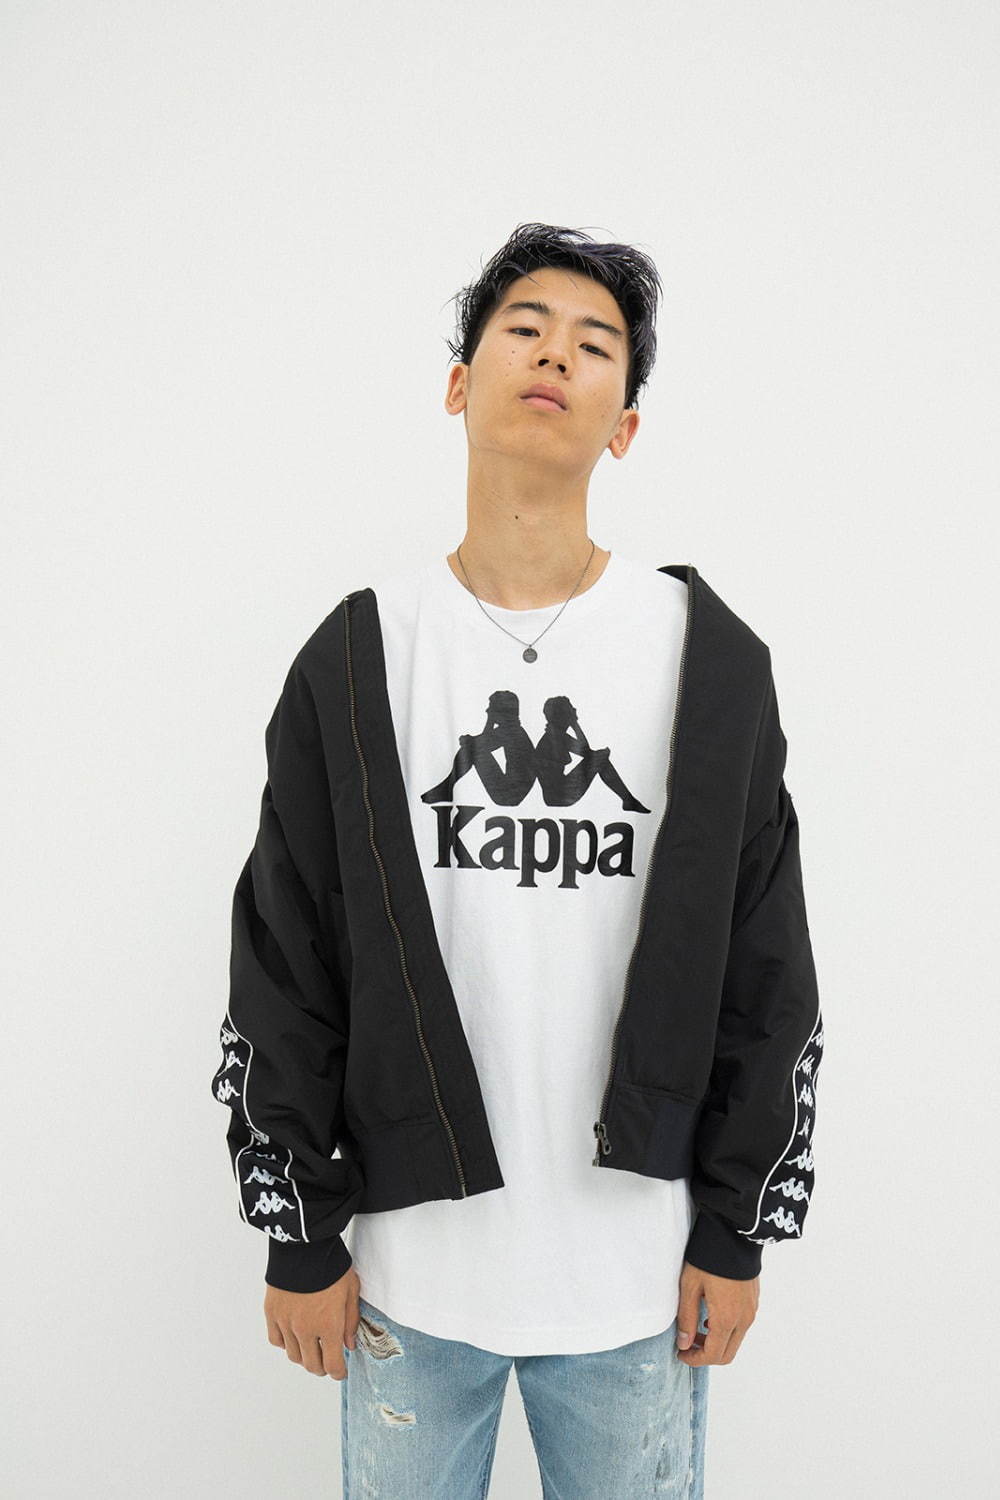 カッパ(Kappa) 2020-21年秋冬ウィメンズ&メンズコレクション  - 写真19